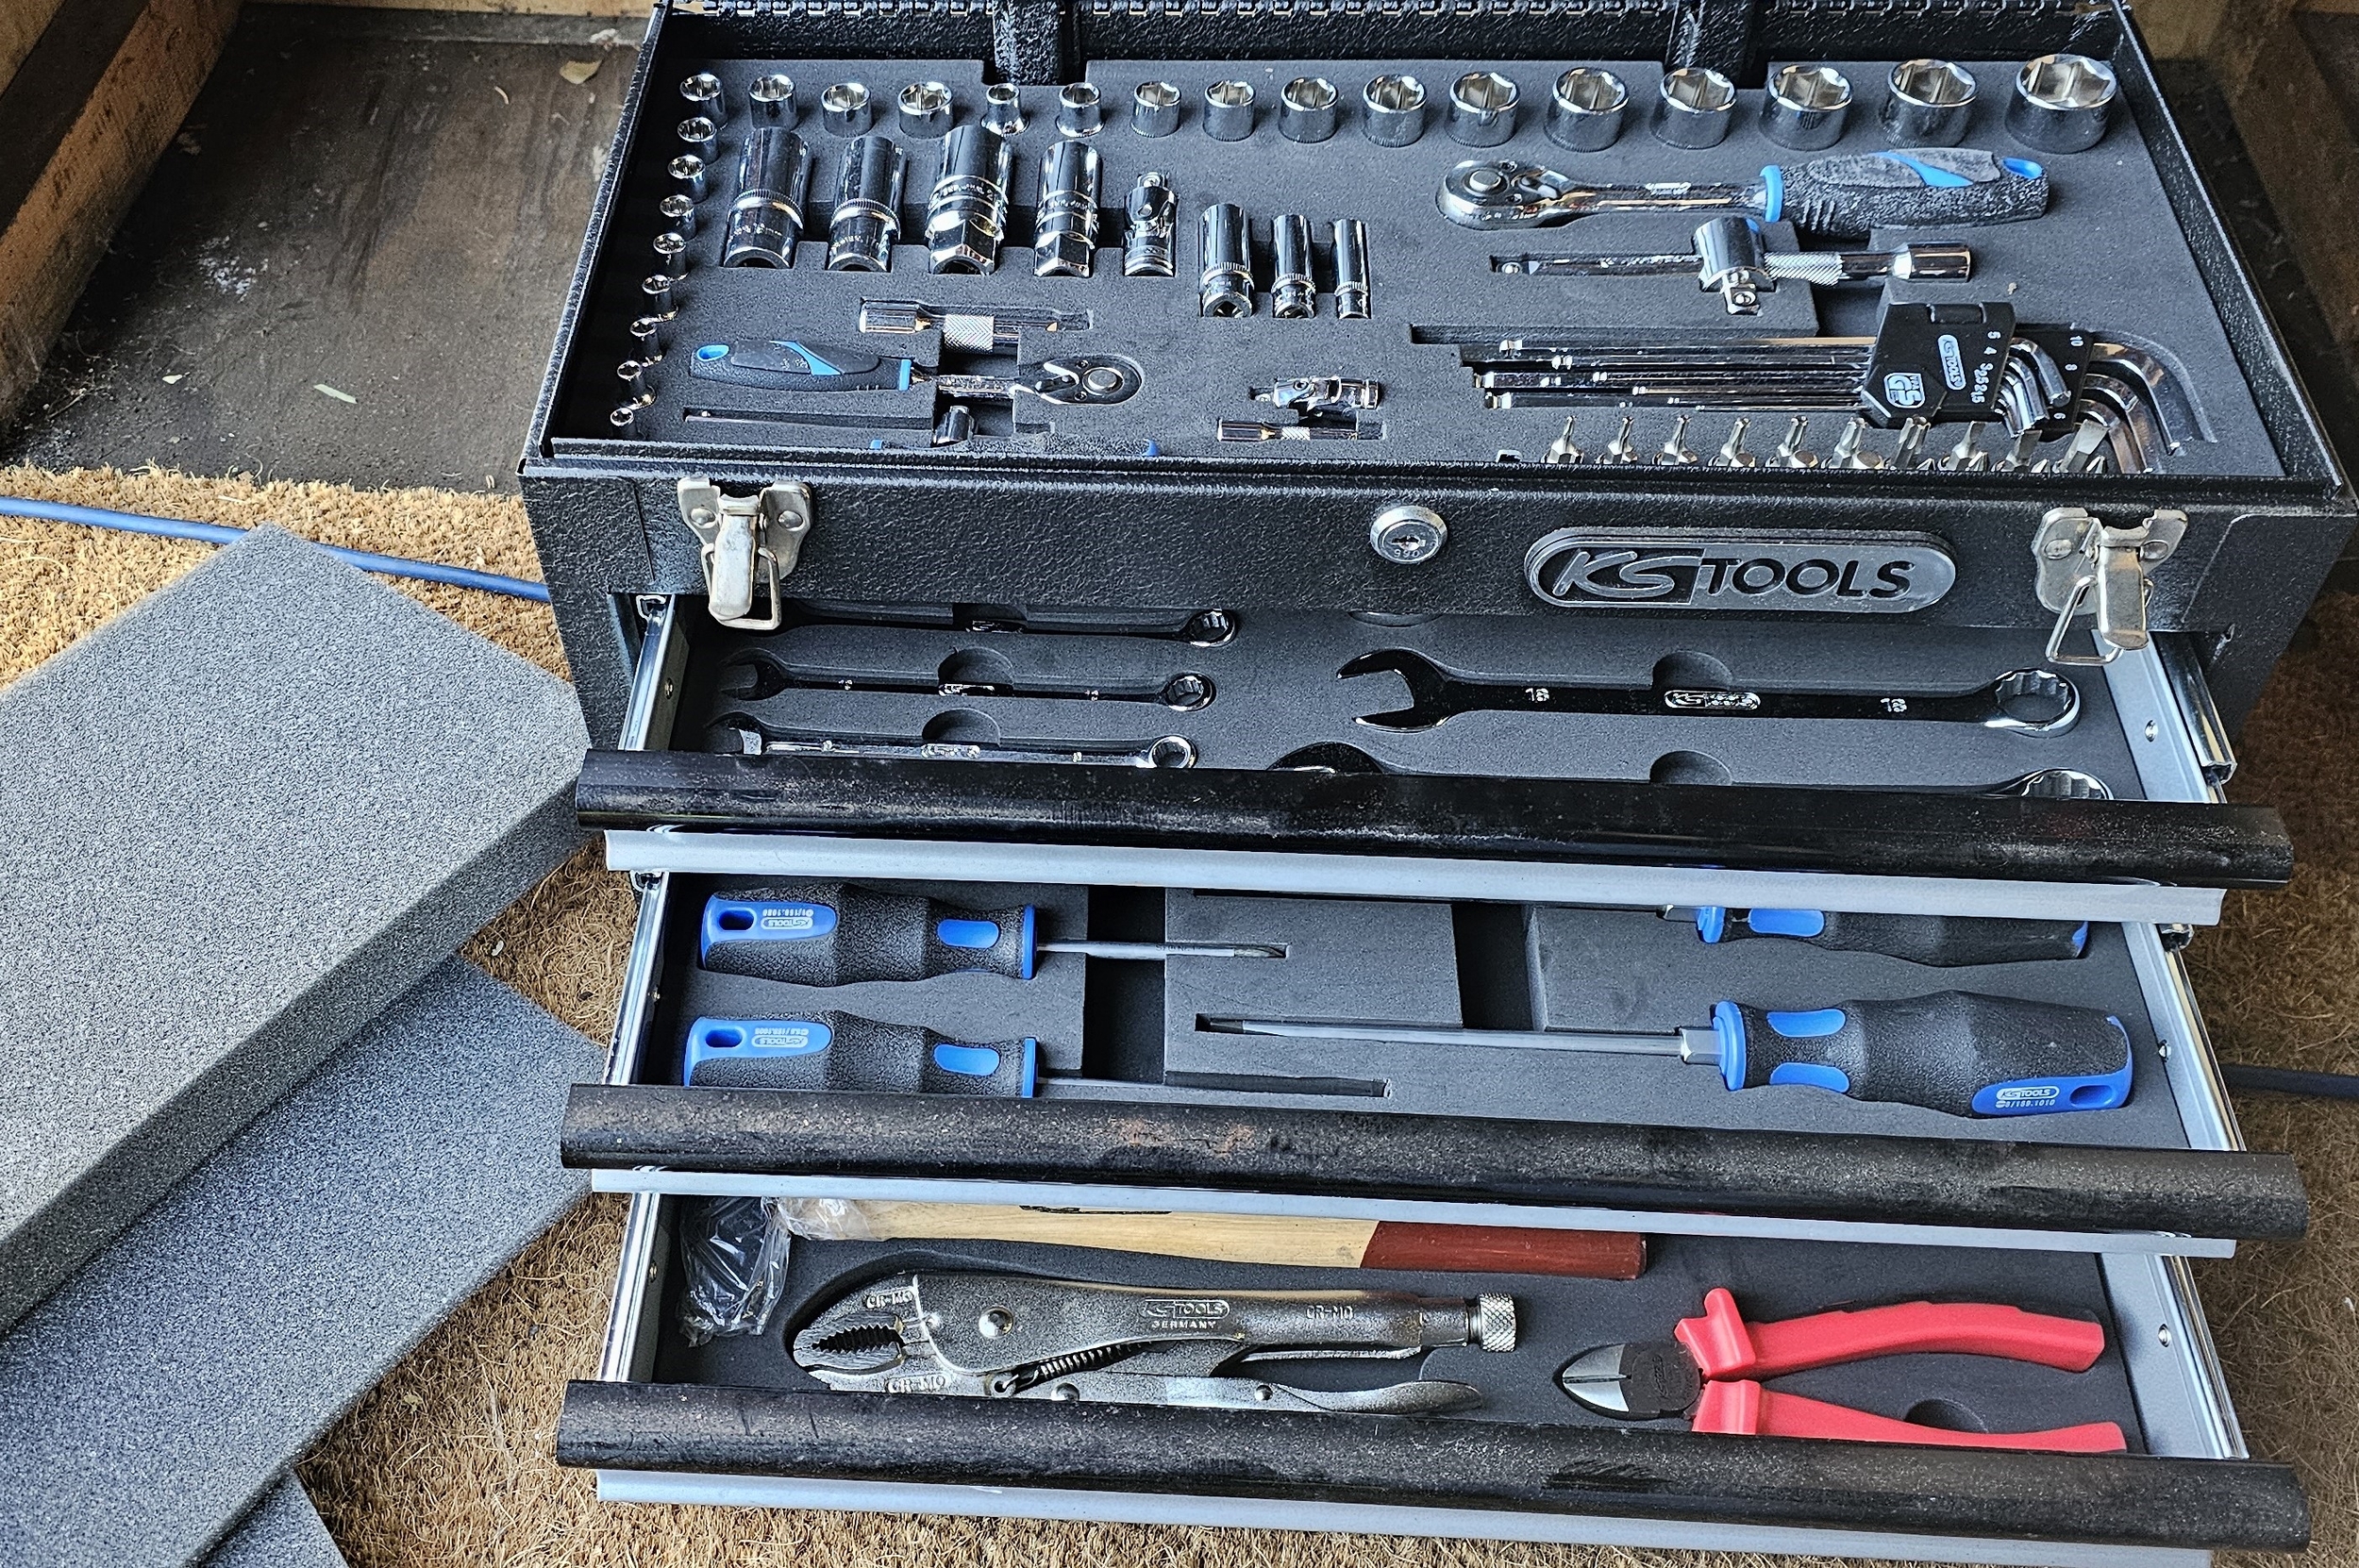 A KS Tools three drawer tool chest, unused